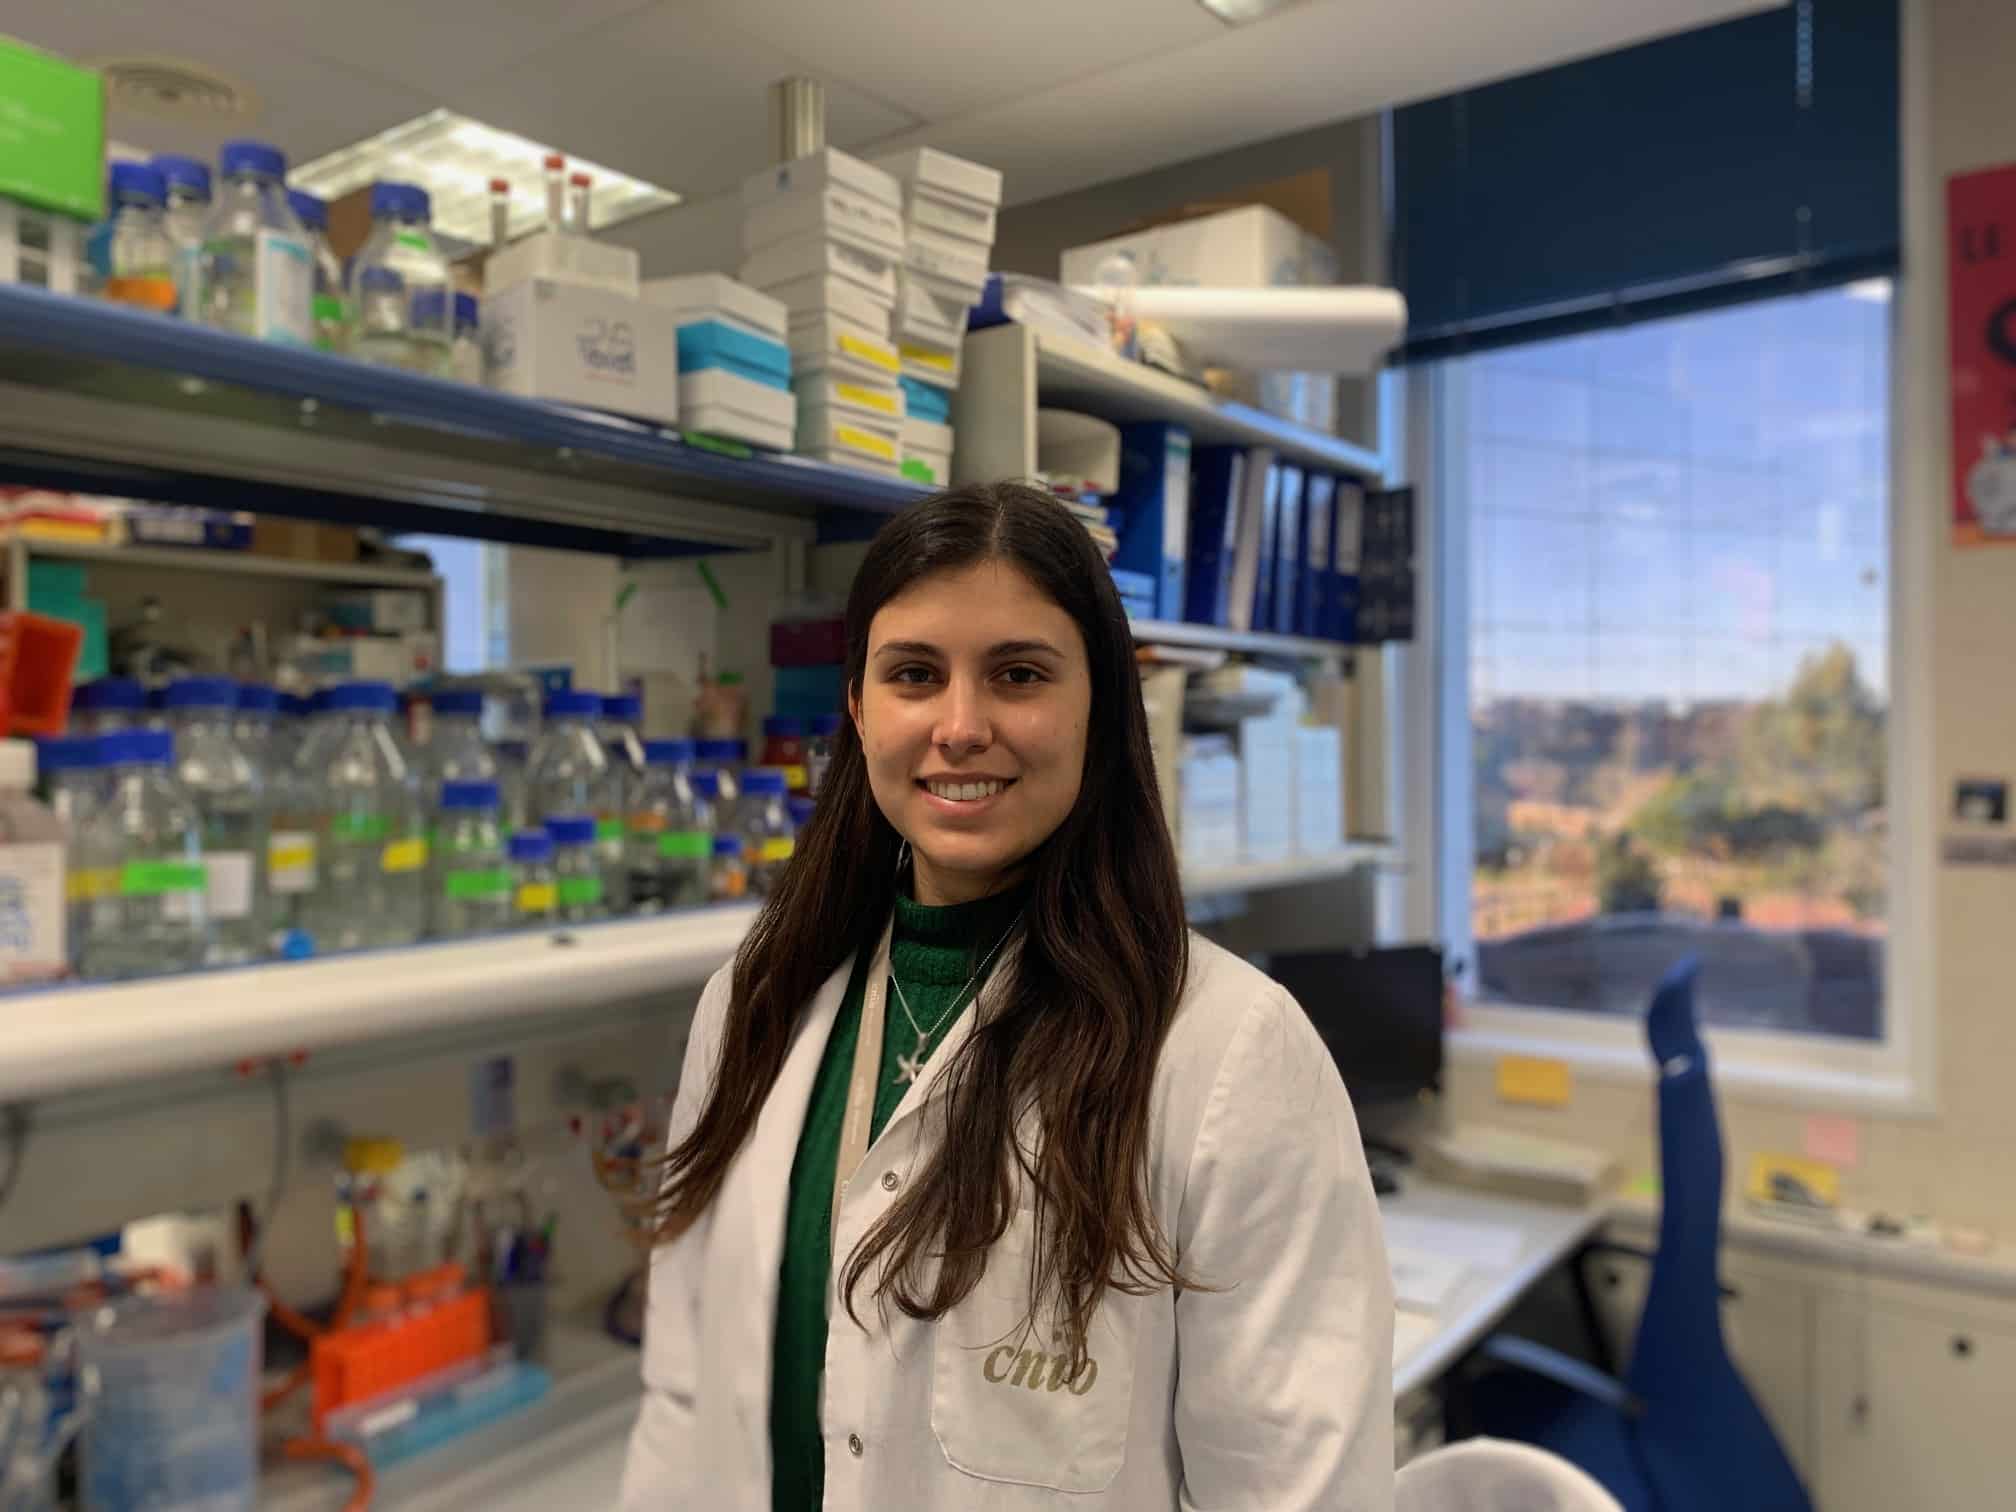 Gloria Bonel cursa un Doctorado en Biociencias Moleculares (Medicina), en el CNIO – Centro Nacional de Investigaciones Oncológicas.